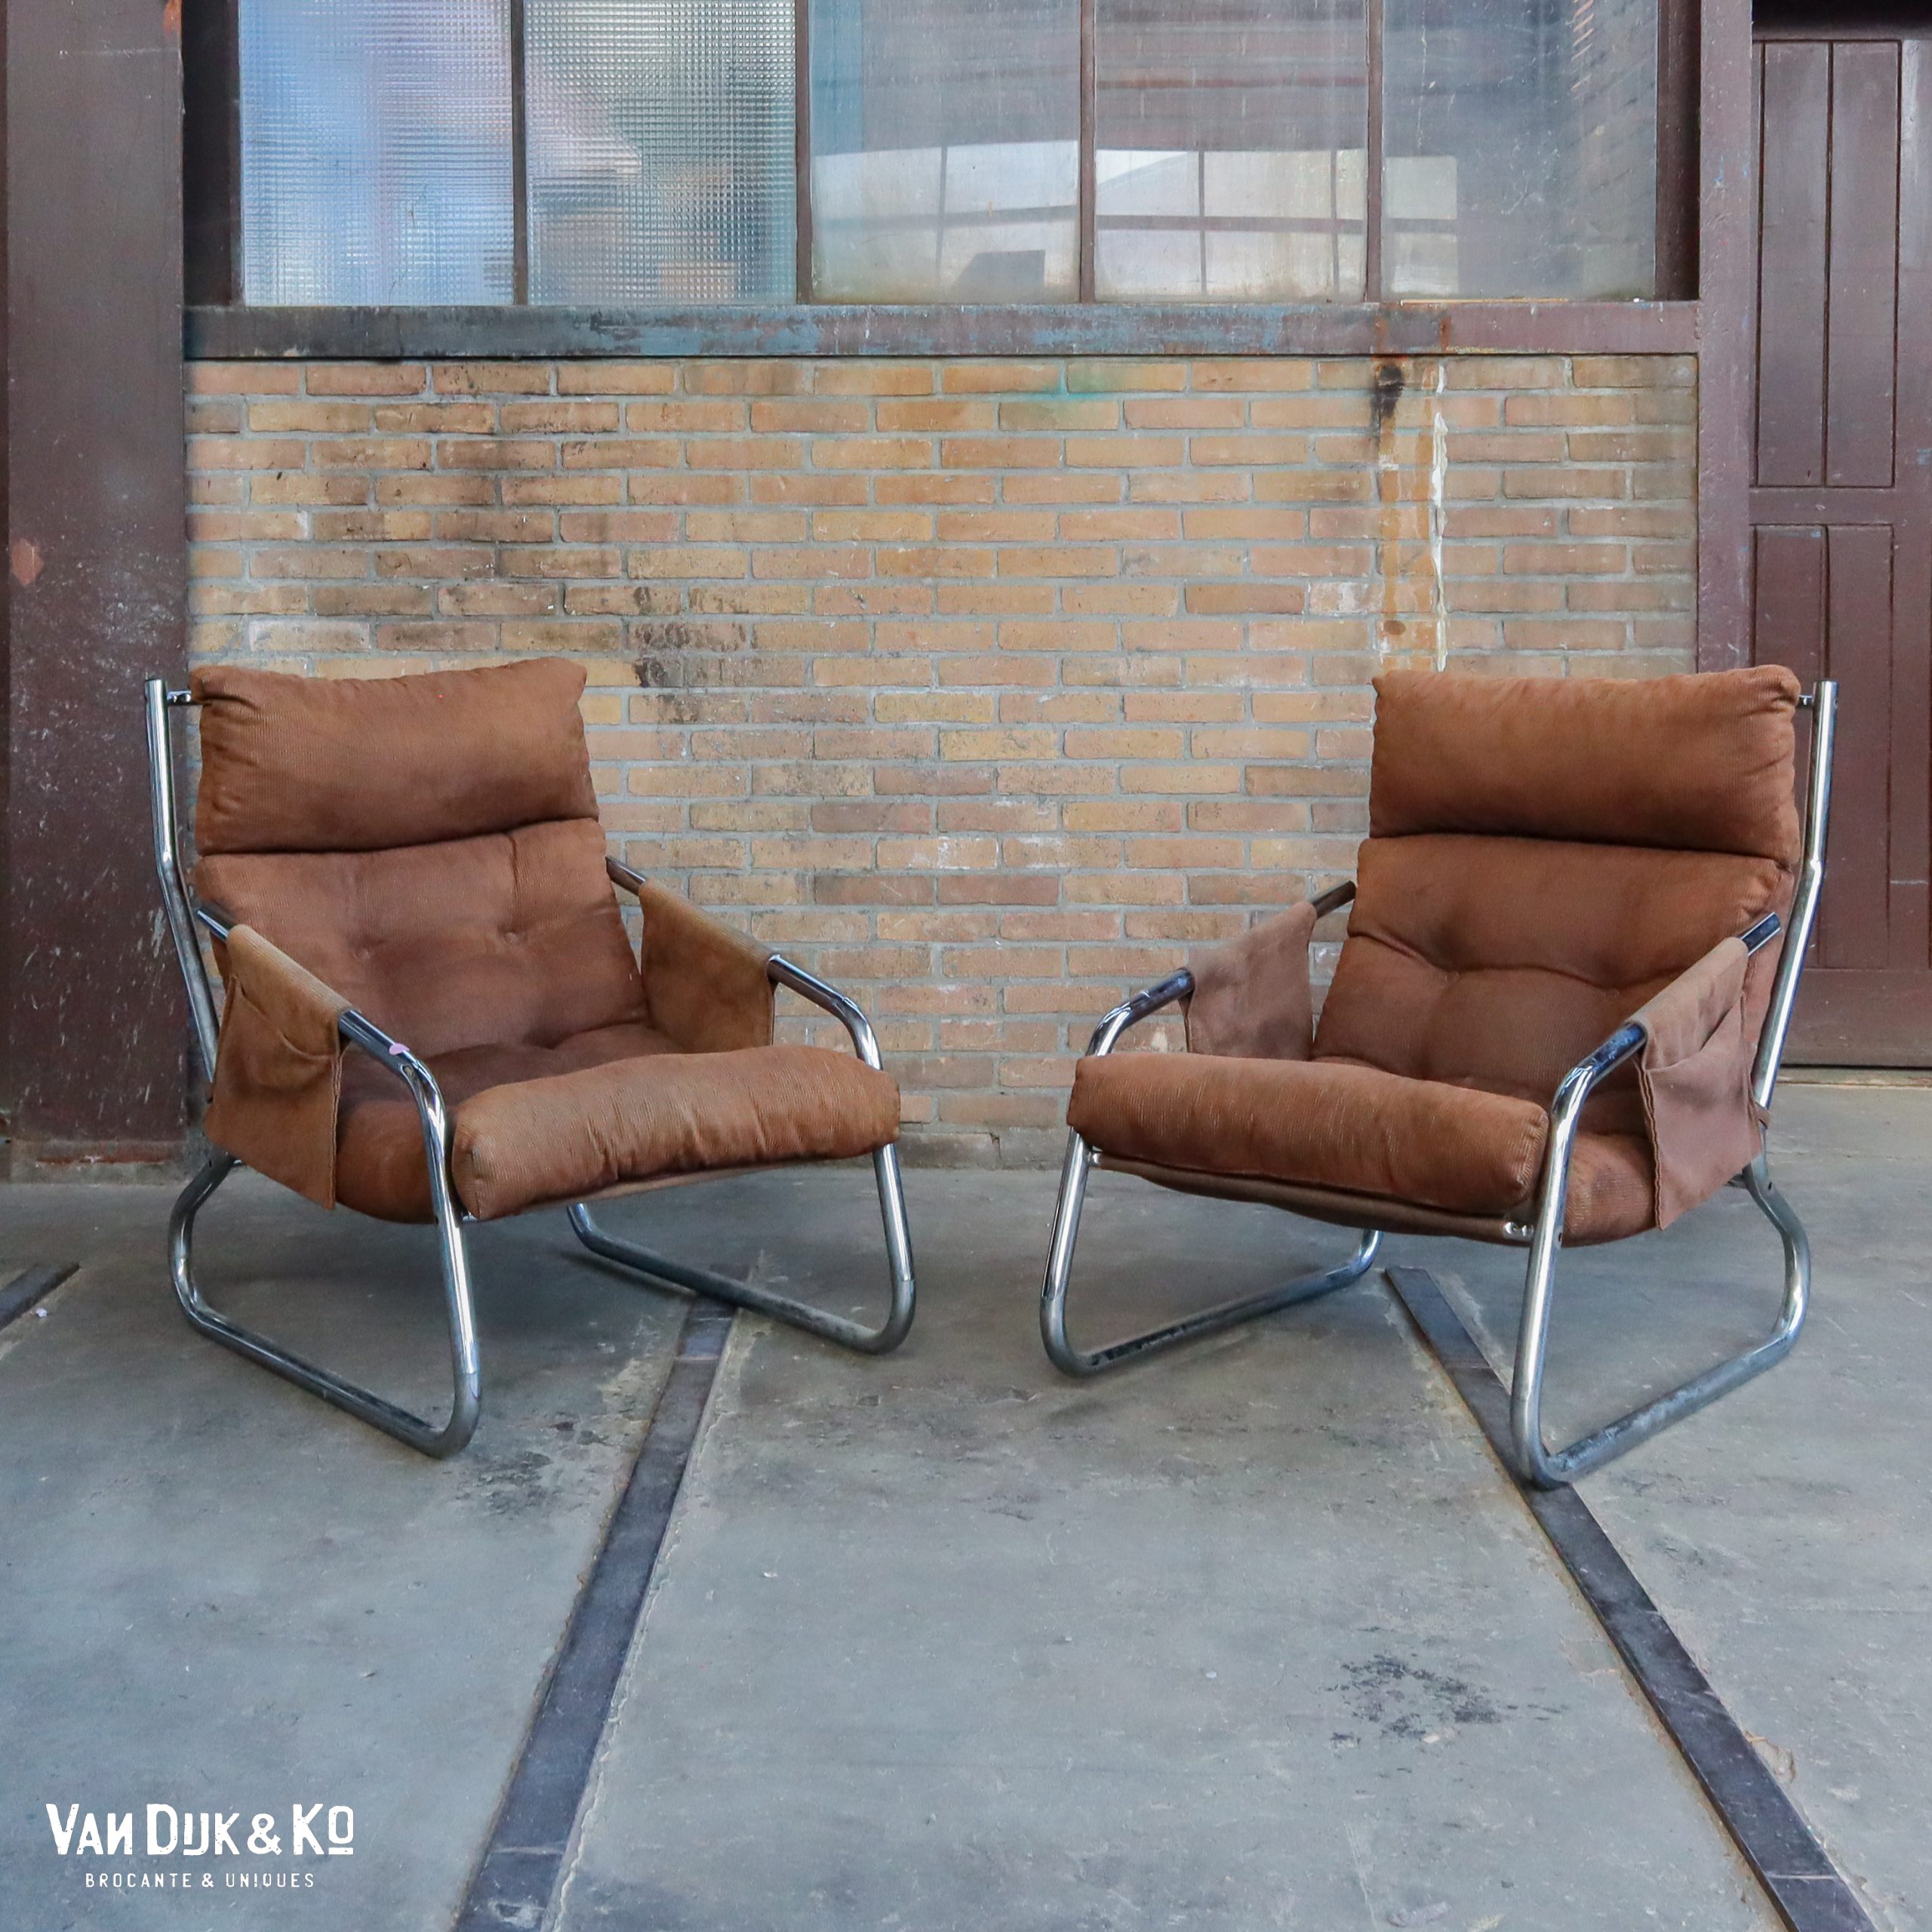 Uitleg zout Let op Vintage fauteuils – Gilles Lundgren voor Ikea » Van Dijk & Ko